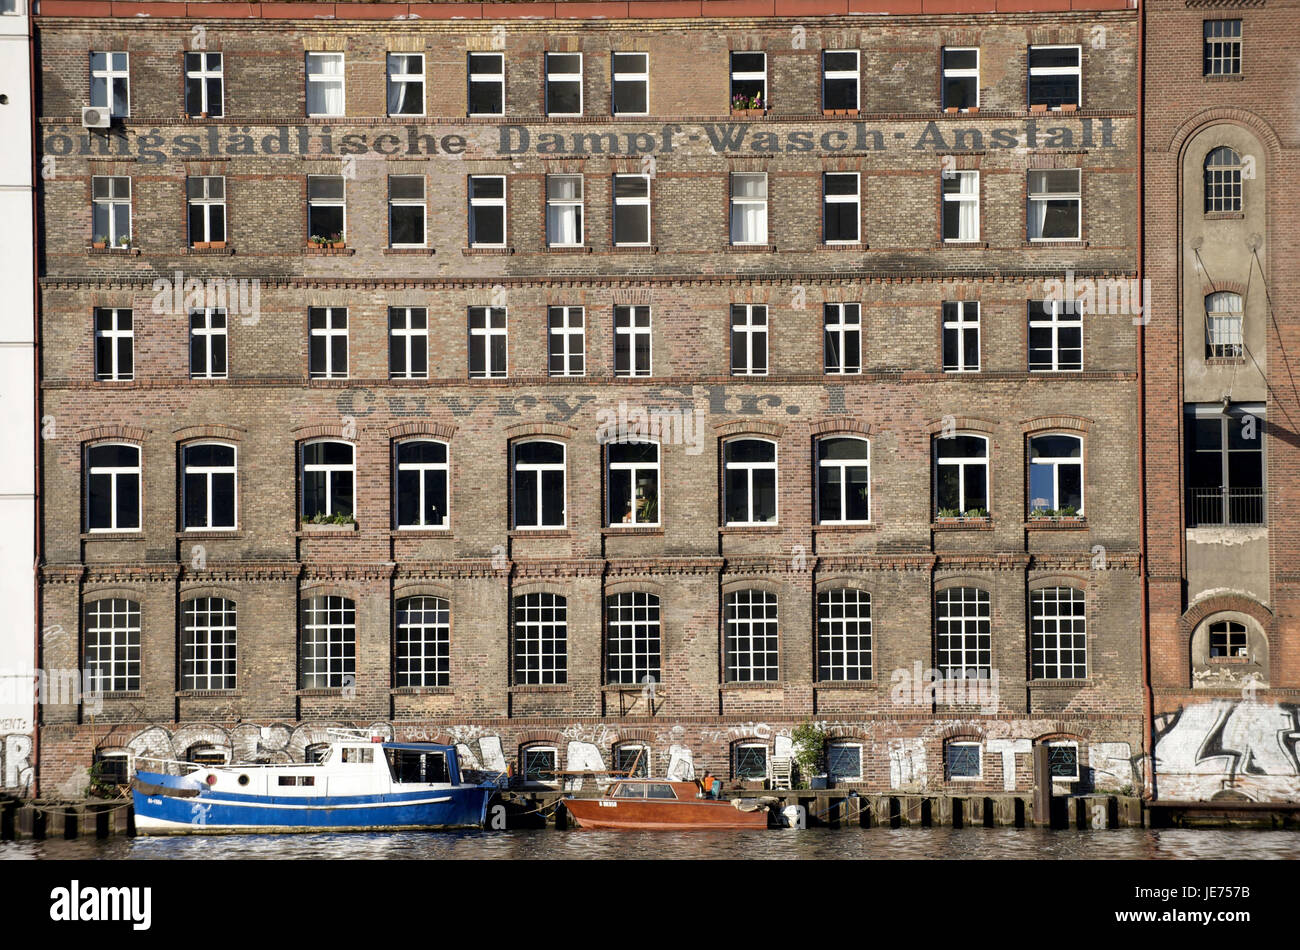 Germania Berlino, la facciata del palazzo del re-urban Dampf-Wasch istituzione, Foto Stock